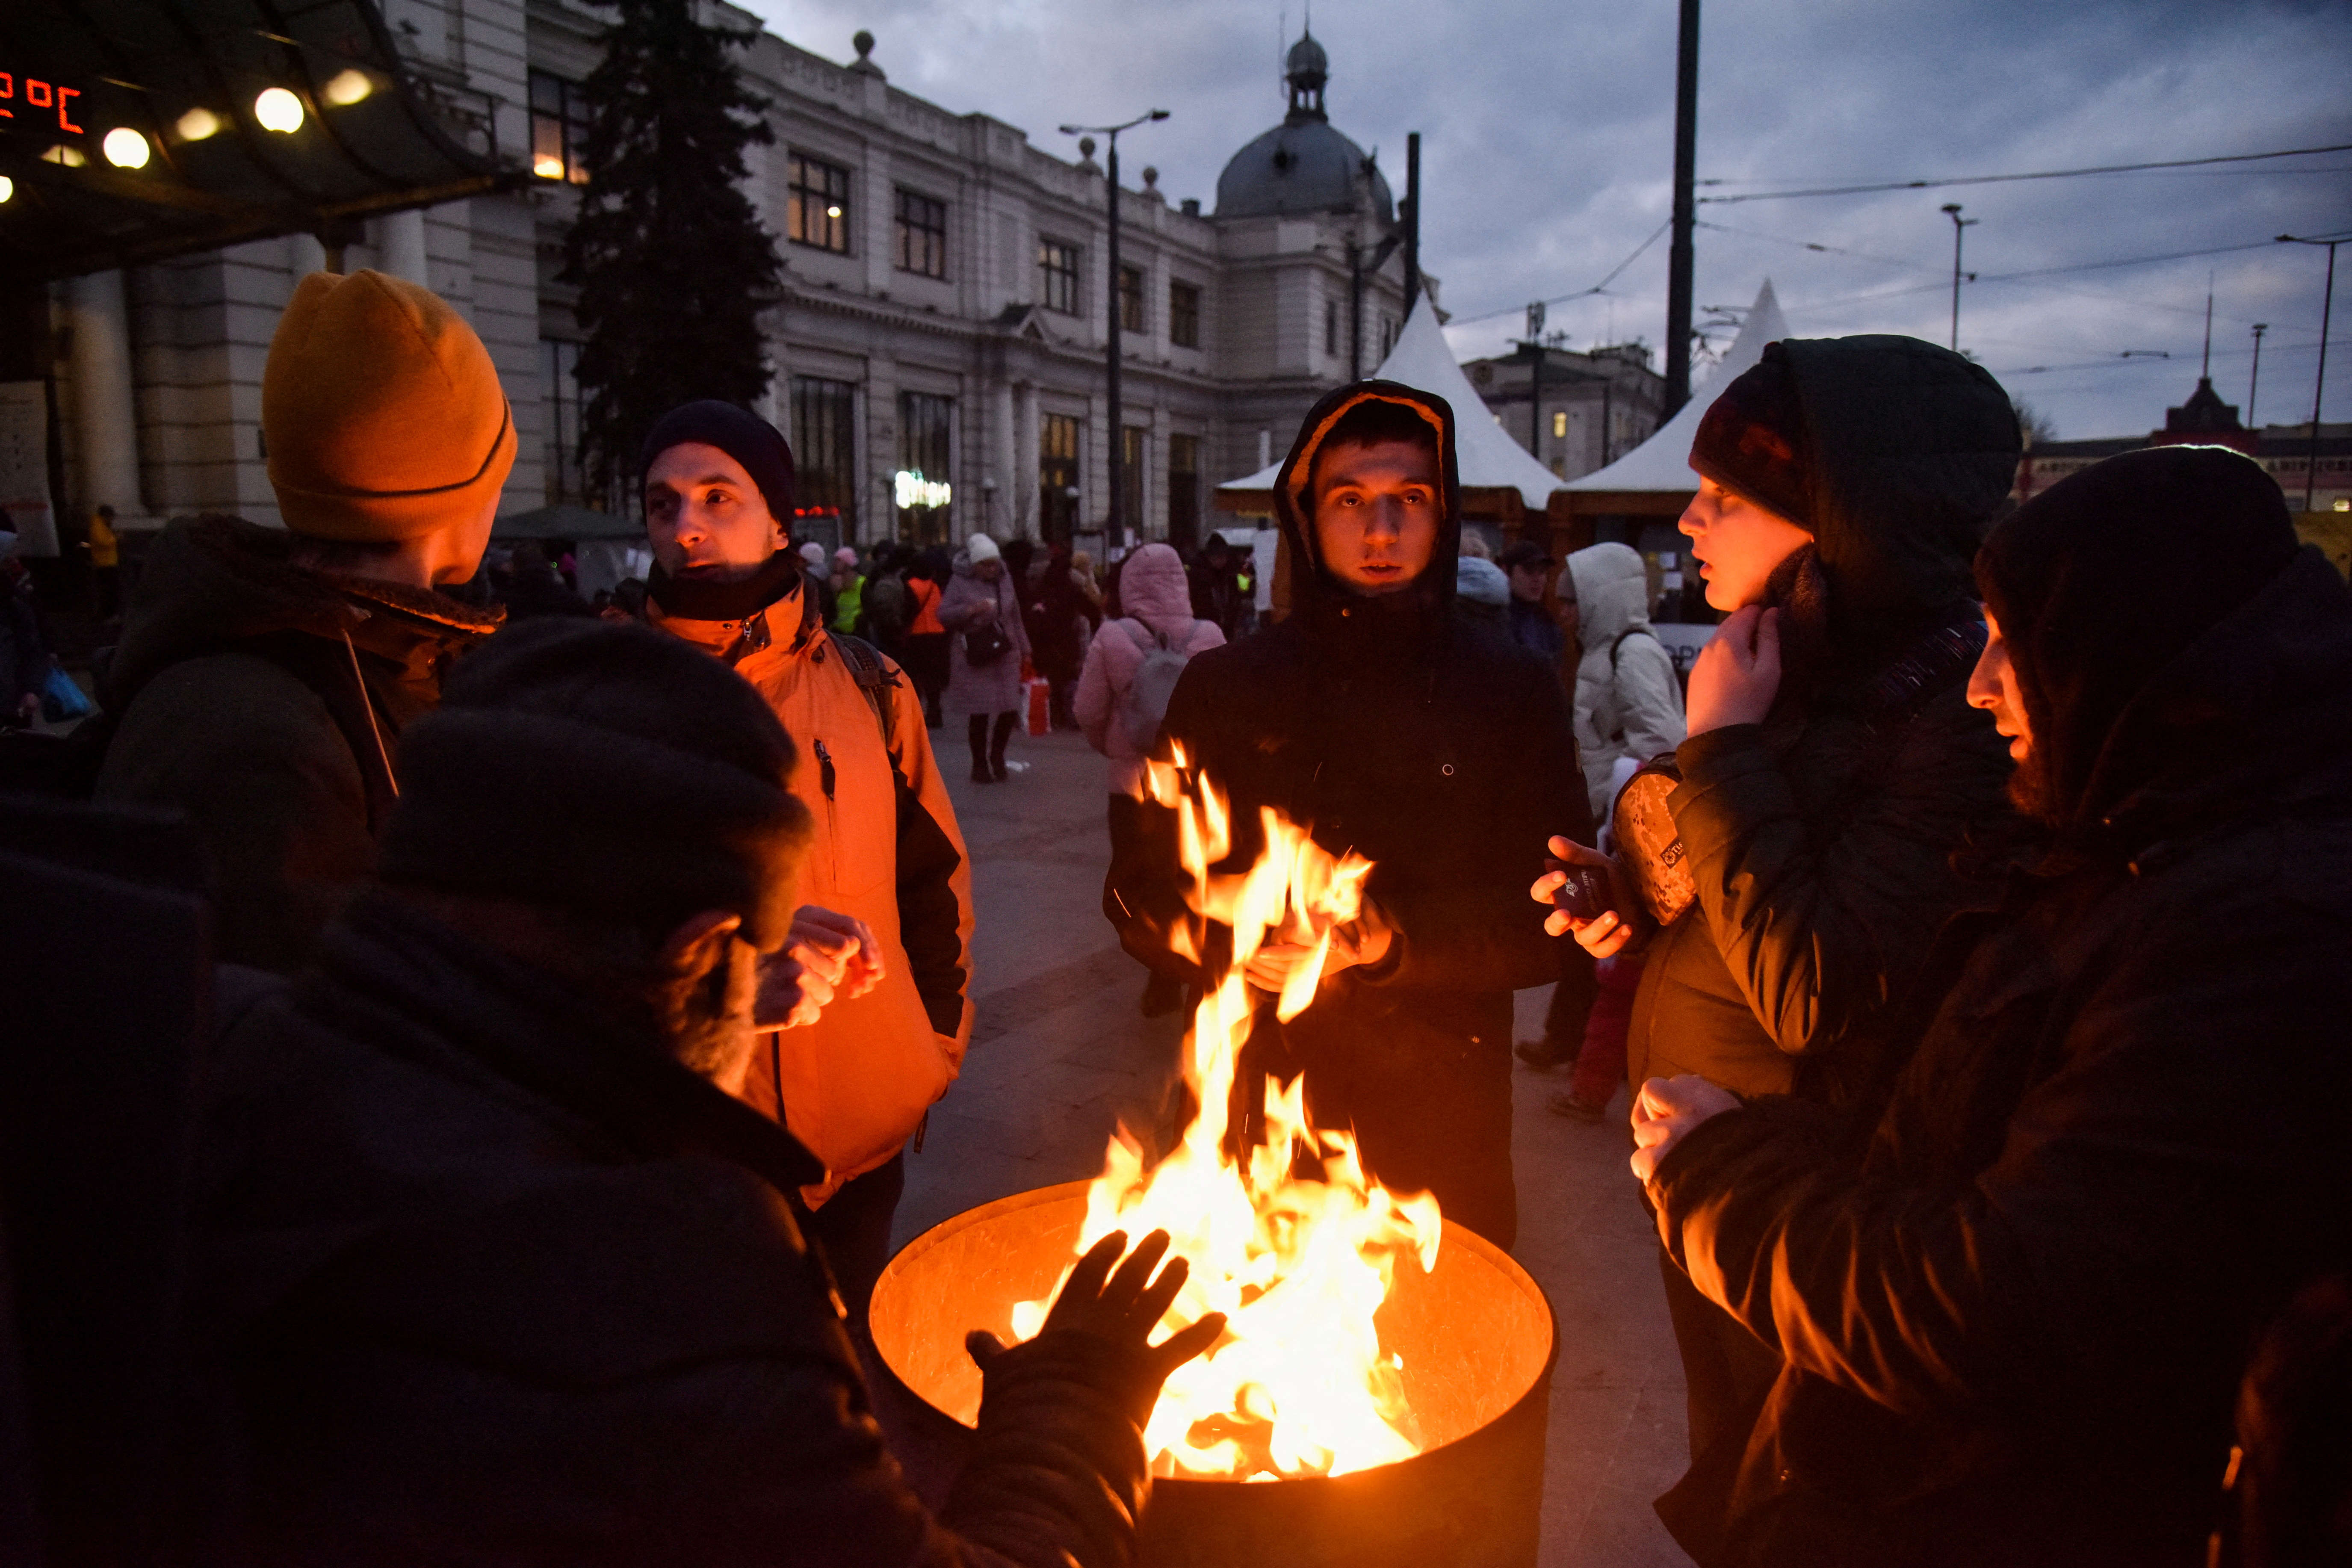 Russia's invasion of Ukraine continues, in Lviv